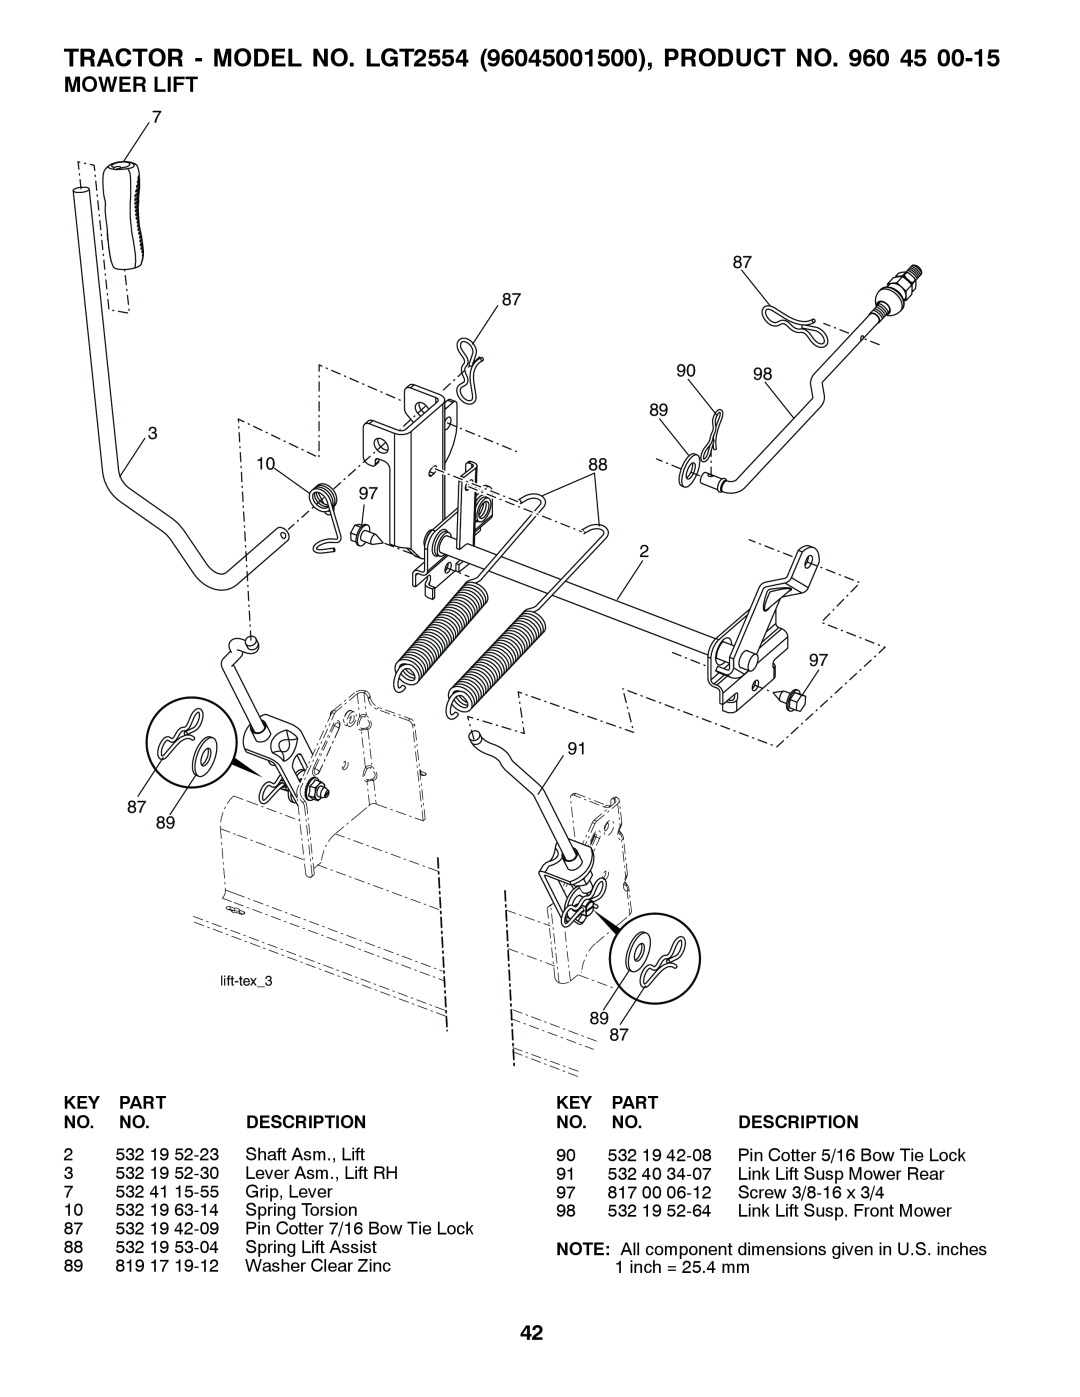 Husqvarna 531 30 96-85 owner manual Mower Lift, TRACTOR - MODEL NO. LGT2554 96045001500, PRODUCT NO, lift-tex3 